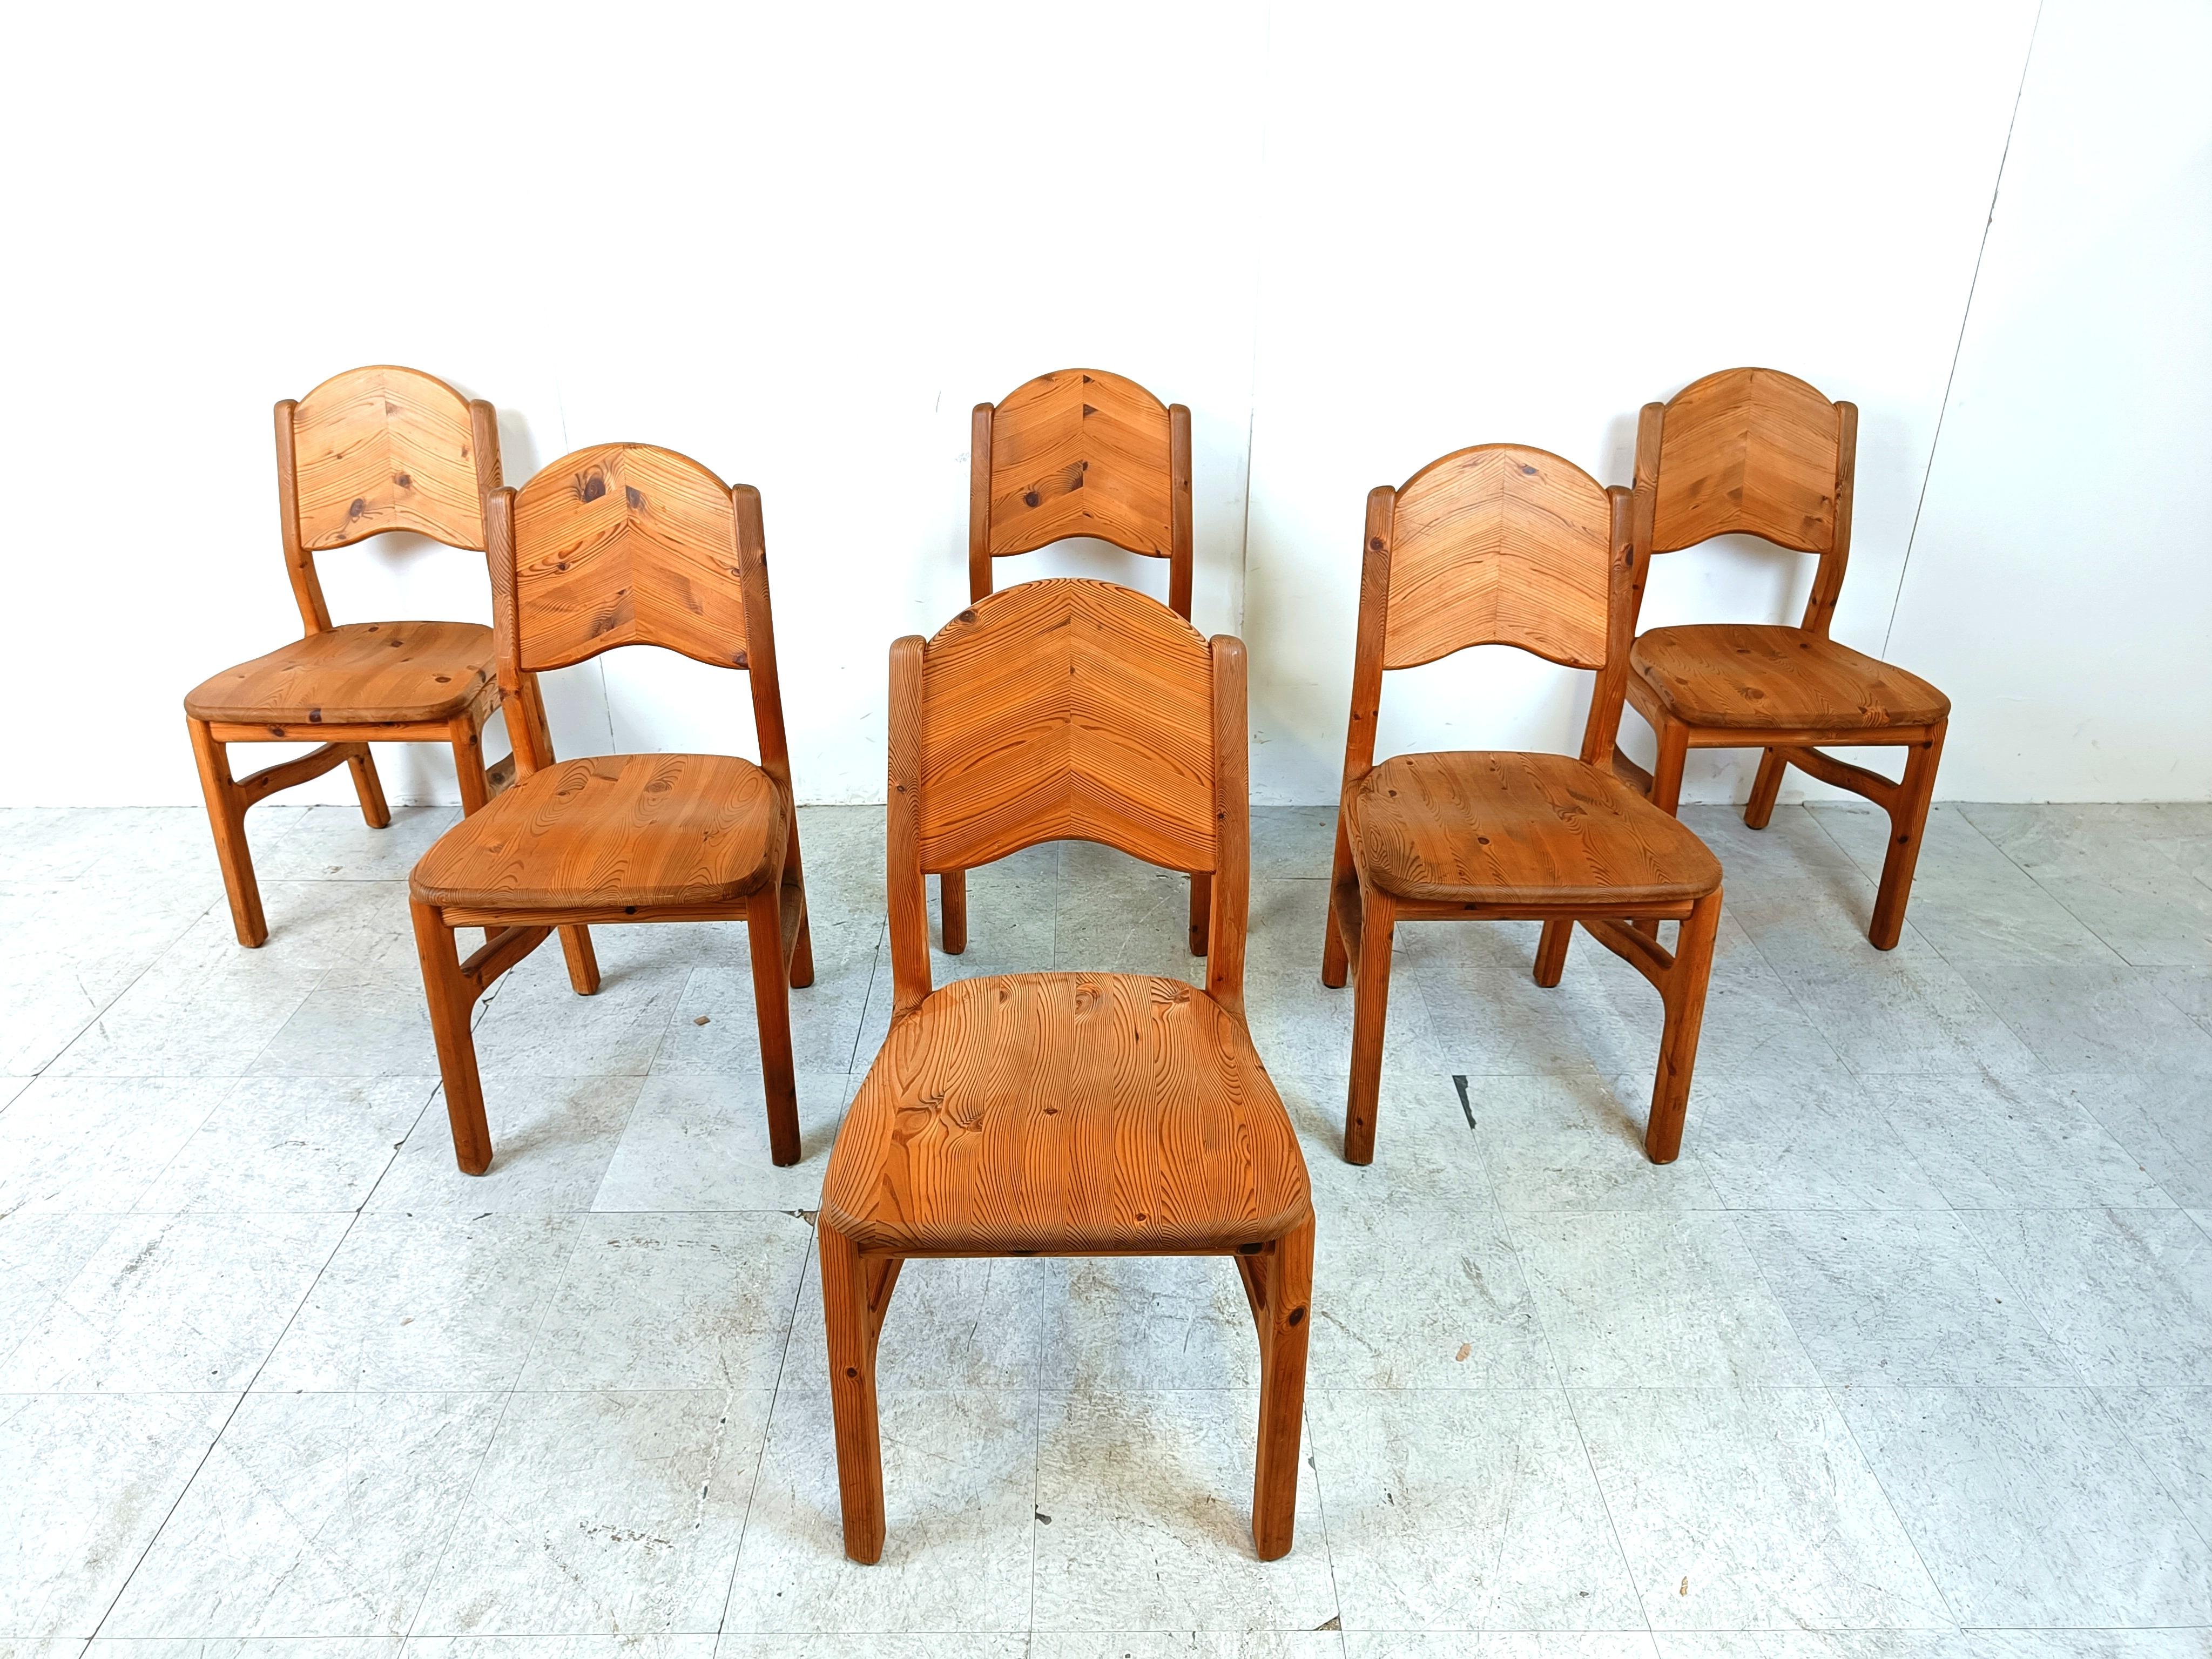 Chaises de salle à manger vintage en bois de pin avec un design étrange et magnifique.

Des chaises agréables et solides.

Intemporelle, elle peut être combinée à de nombreux intérieurs.

Bon état

Années 1970 - Danemark 

Dimensions :
Hauteur :